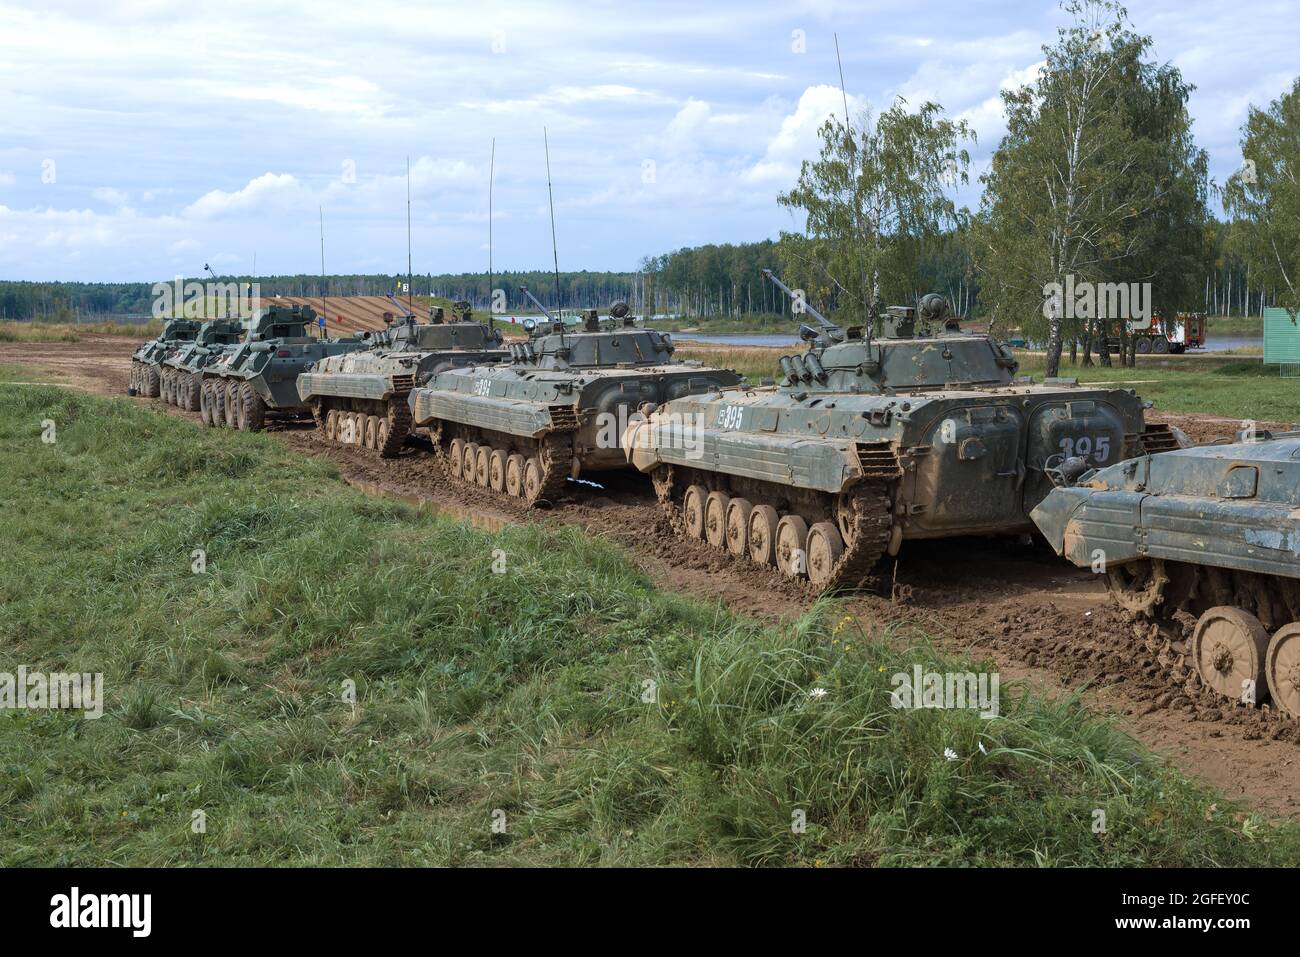 RÉGION DE MOSCOU, RUSSIE - 27 AOÛT 2021 : une colonne d'équipement militaire russe pour un programme de démonstration sur le terrain d'entraînement d'Alabino Banque D'Images